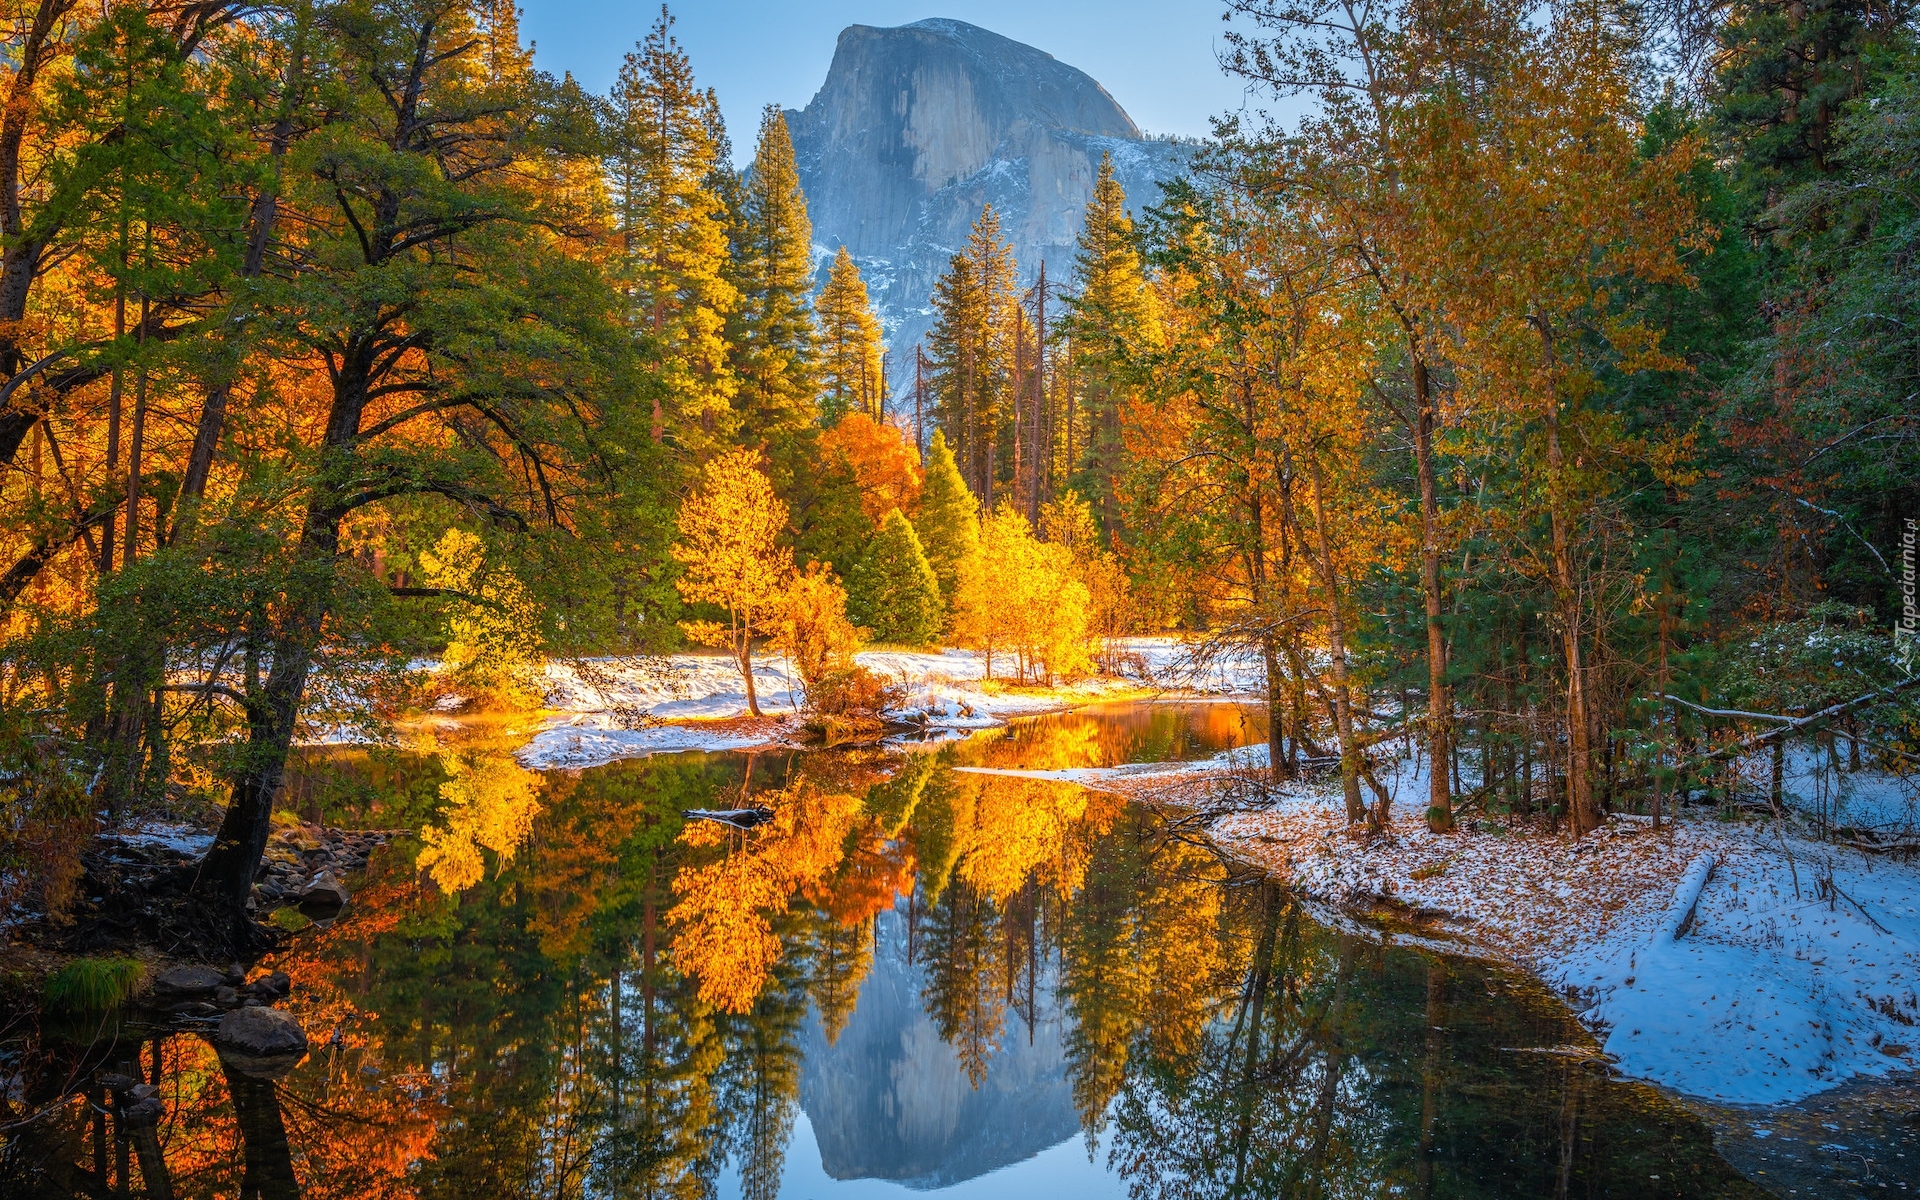 Park Narodowy Yosemite, Góra, Half Dome, Rzeka, Merced River, Jesień, Drzewa, Śnieg, Stany Zjednoczone, Kalifornia